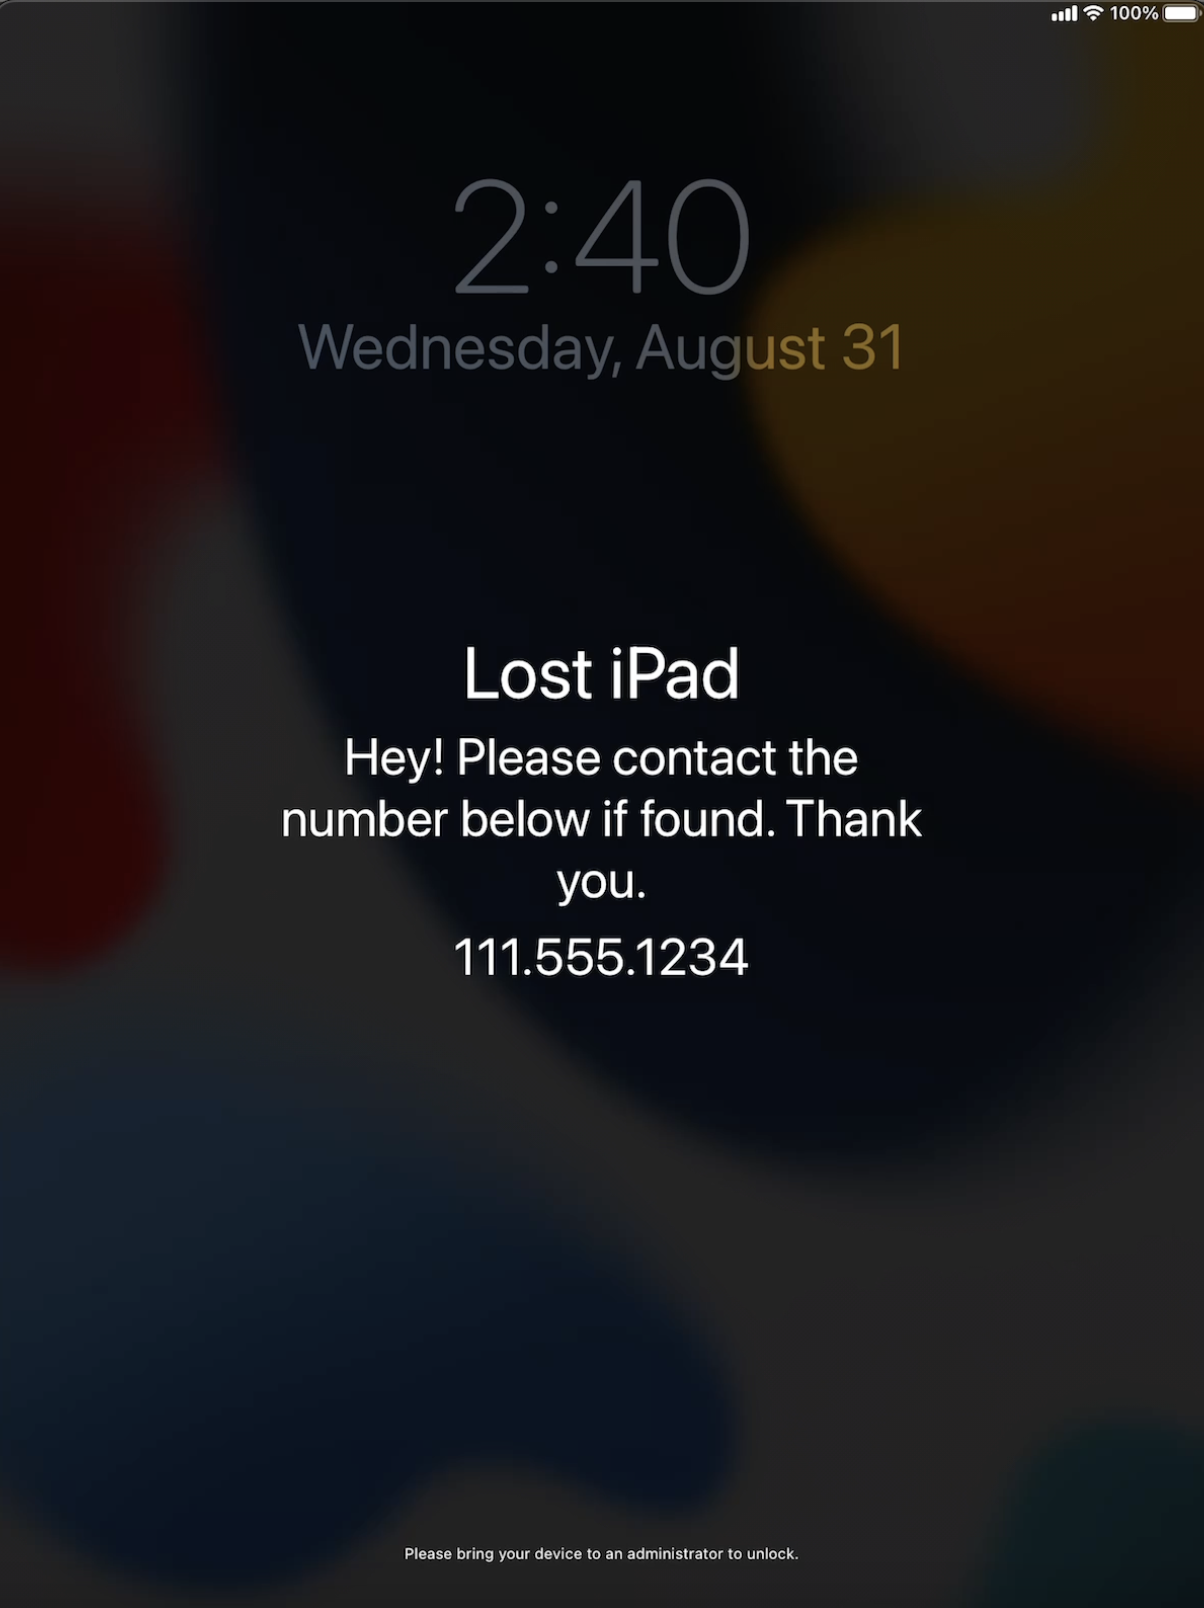 Capture d’écran d’un iPad en mode Perdu, avec un message personnel et un numéro de téléphone à appeler.